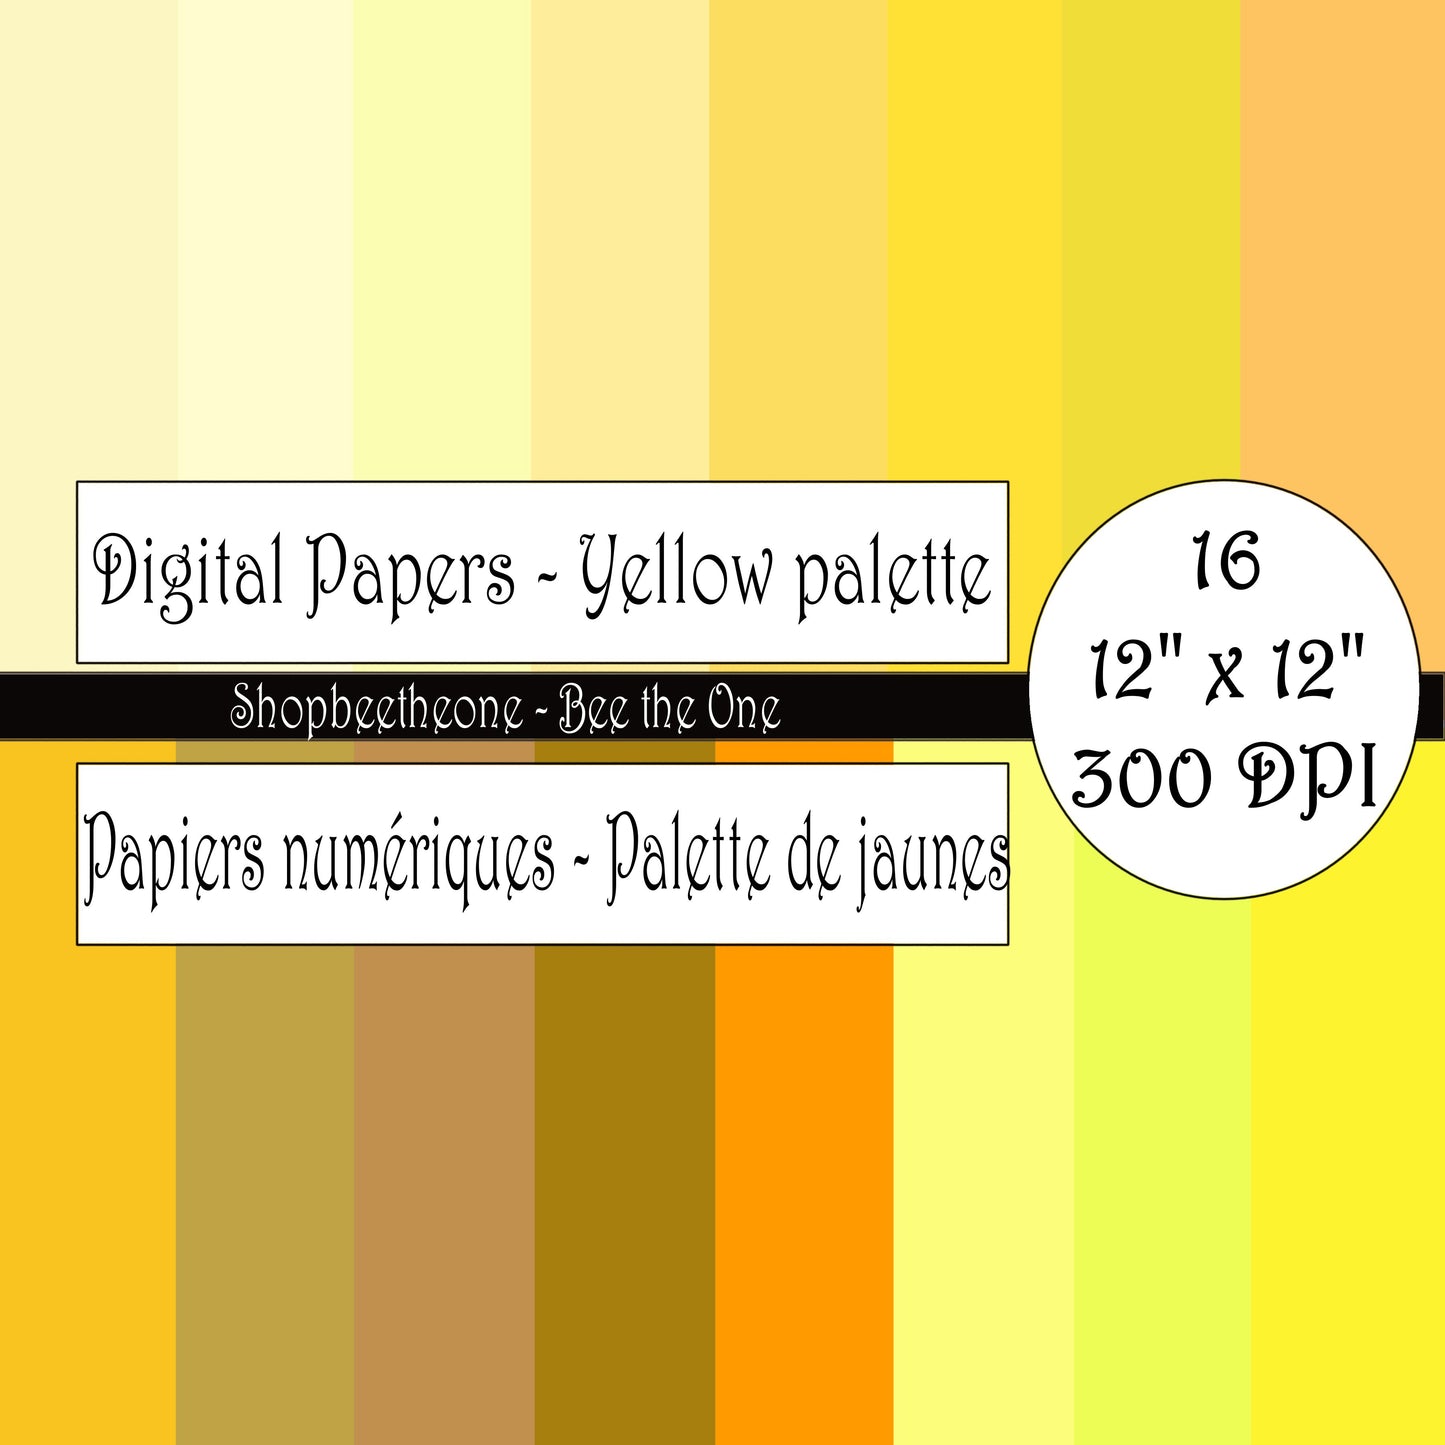 Papiers numériques "Palette de Jaunes" - 12" x 12" - 300 DPI - Set de 16 images - A télécharger